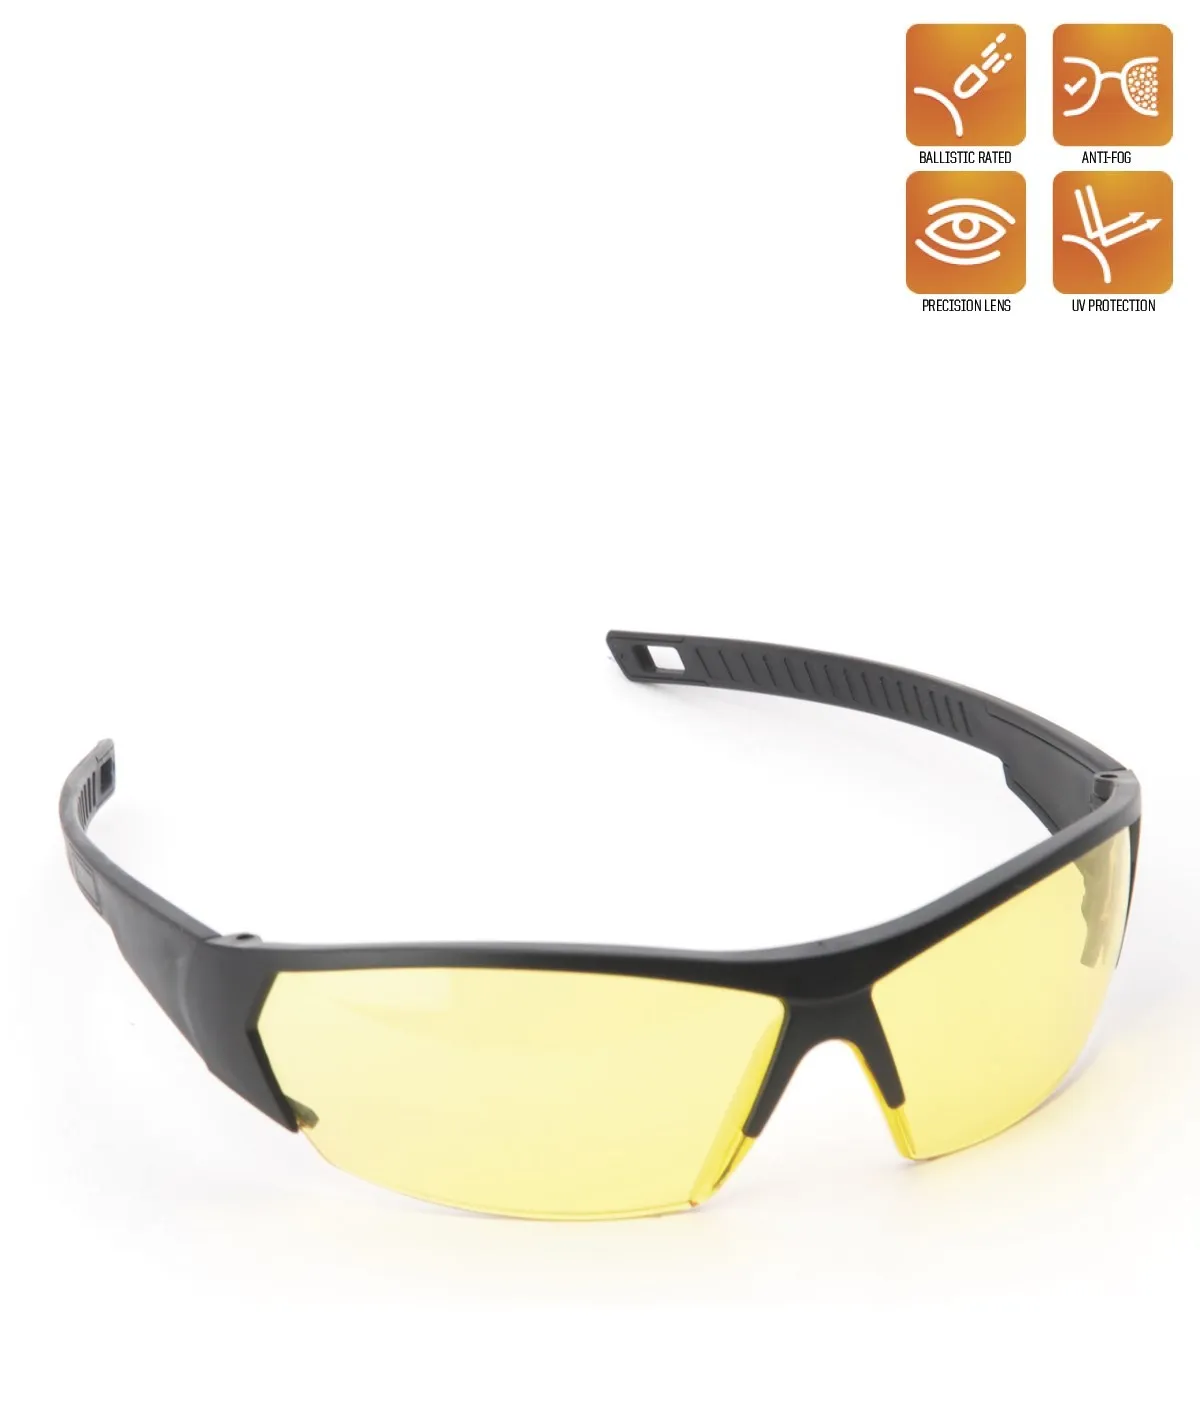 Tanie Yds Sport Zen okulary balistyczne, obszar użytkowania: wojskowy/operacyjny, materiał: poliwęglan